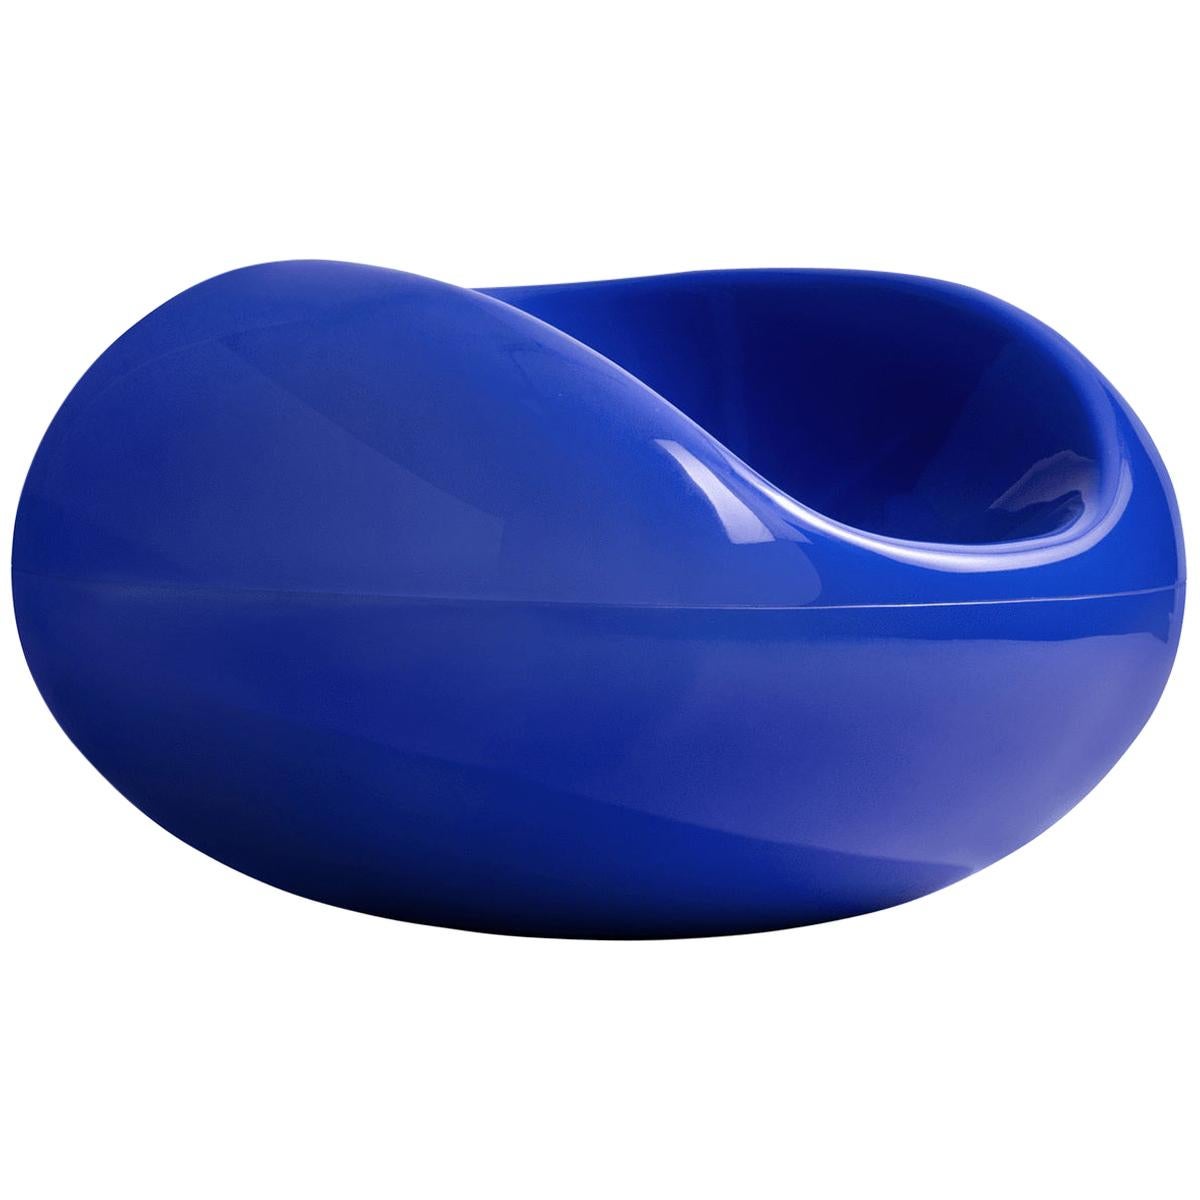 Blauer Pastellstuhl von Eero Aarnio, Ikonischer Stil